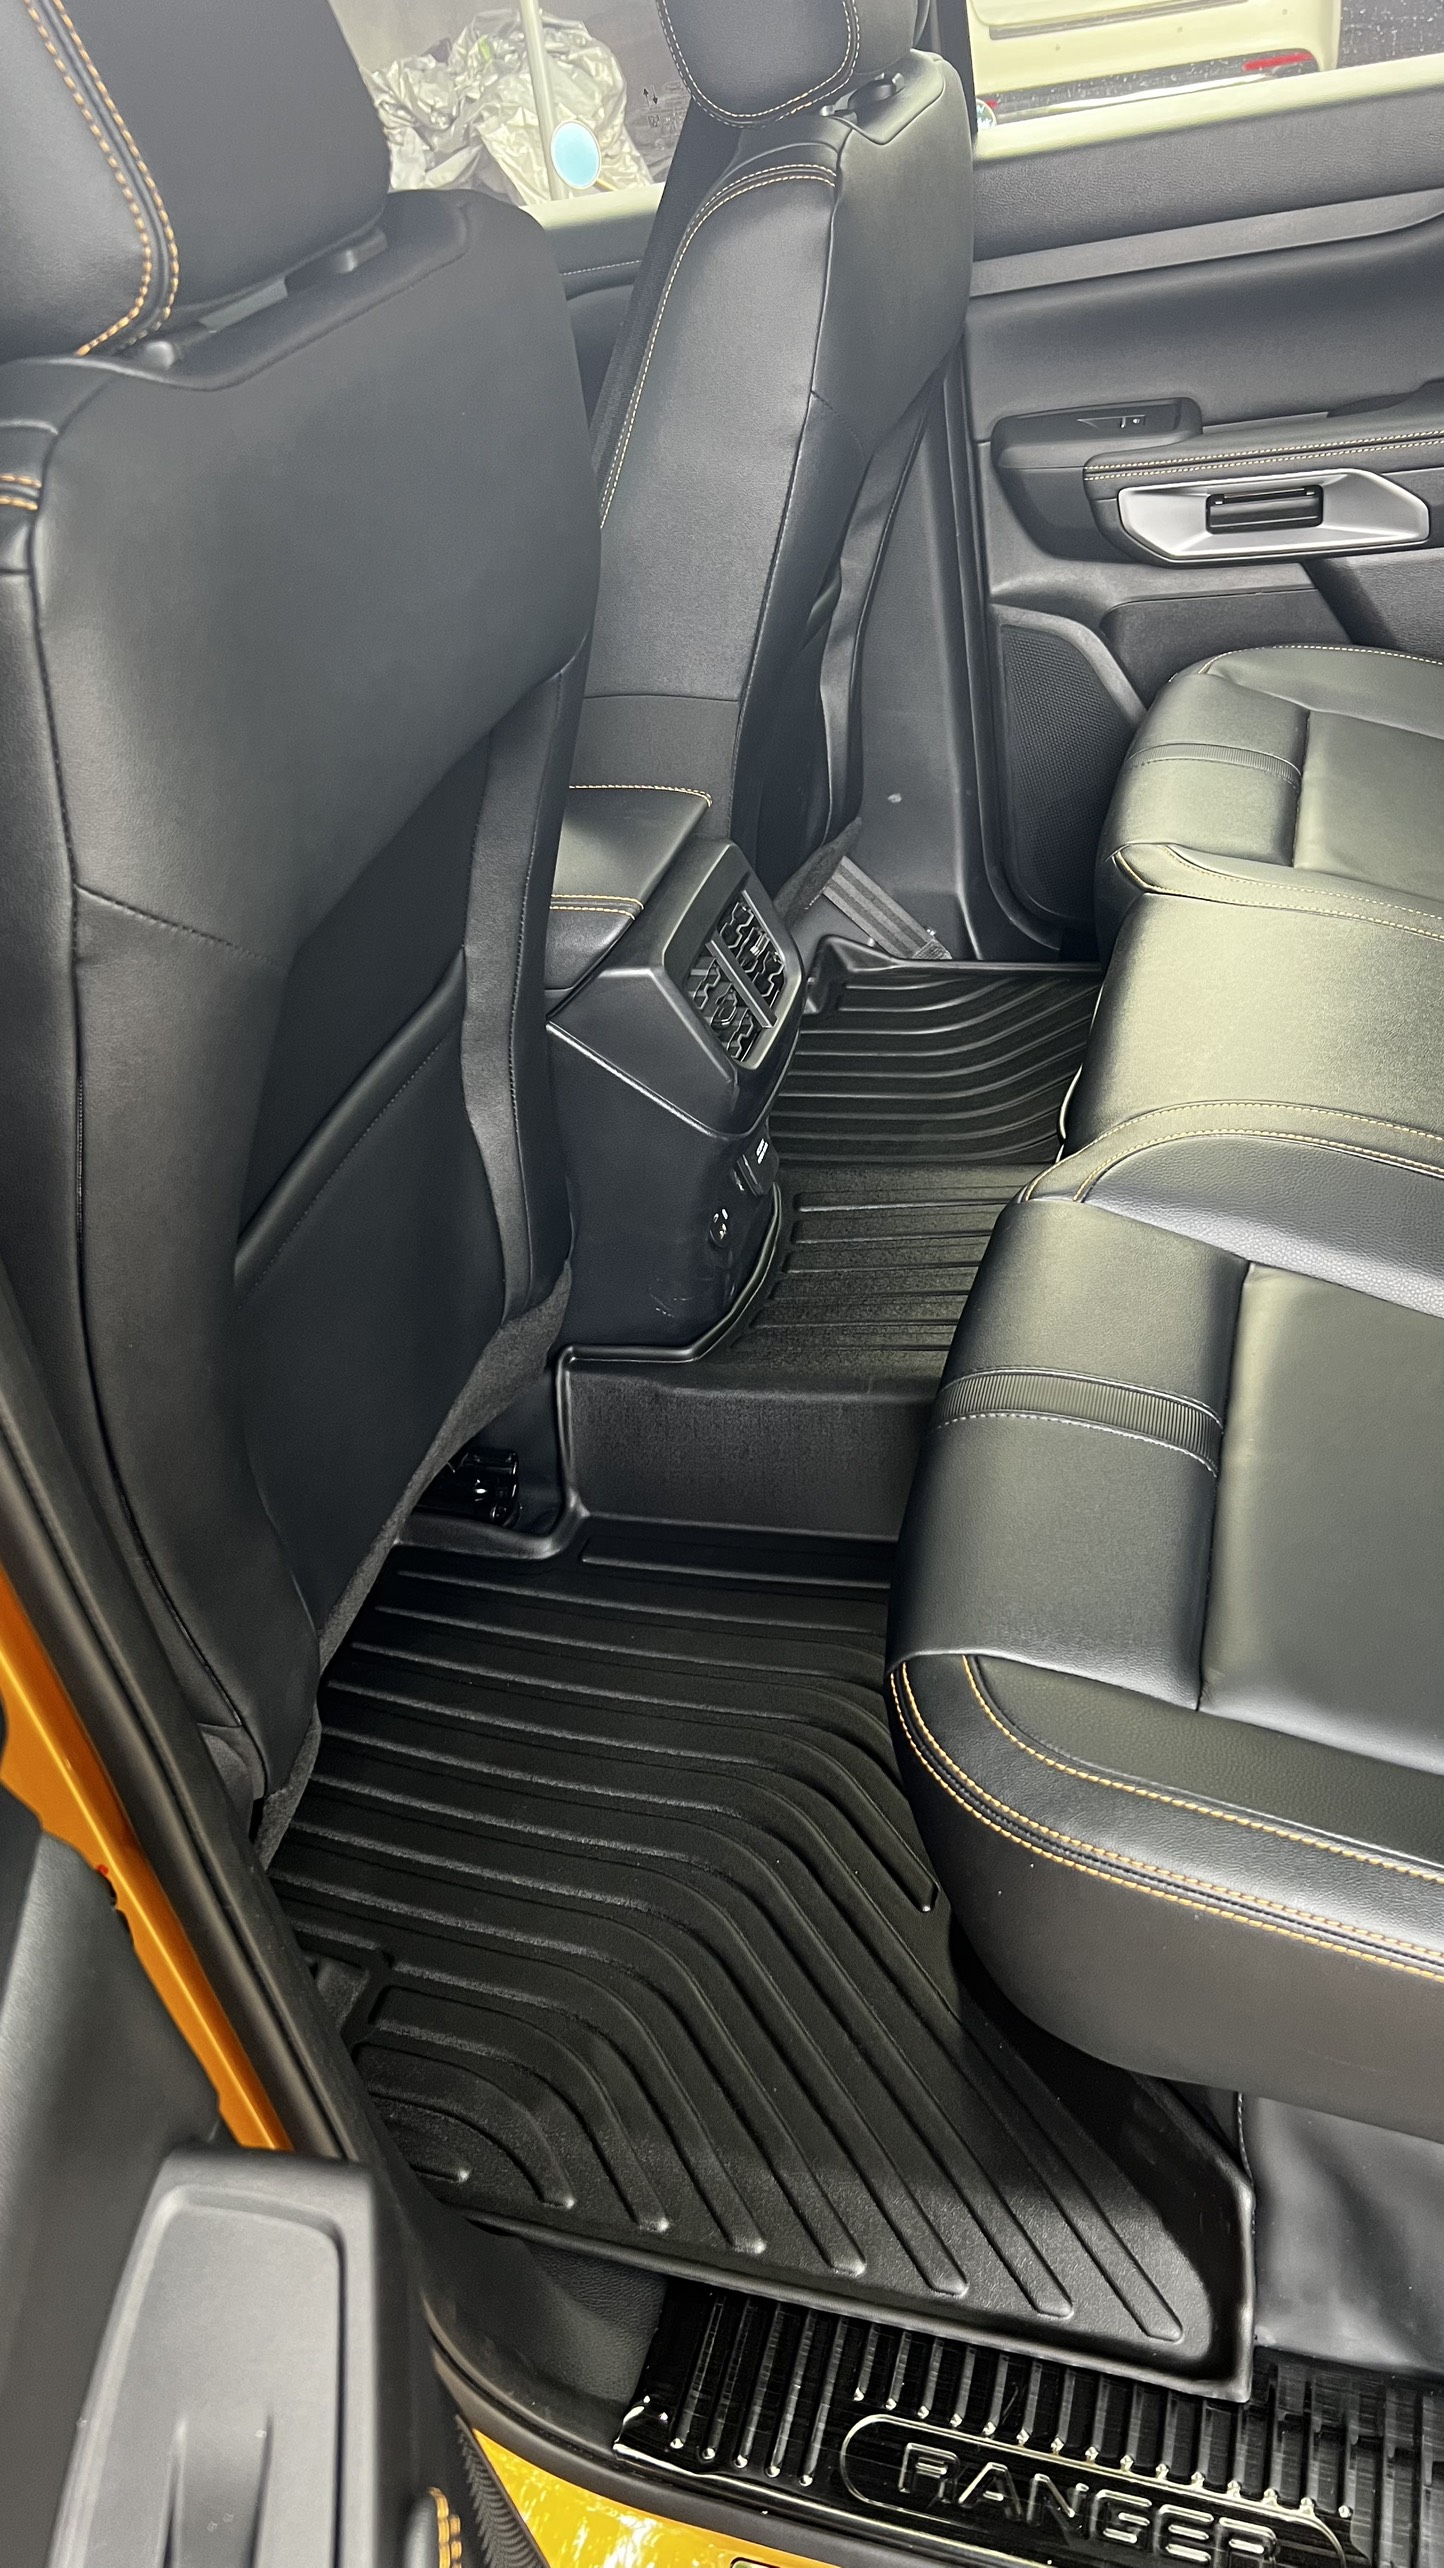 Hàng loại 2 Thảm lót sàn xe ô tô Ford Ranger/ Ford Raptor 2012-2021 Nhãn hiệu Macsim chất liệu nhựa TPE